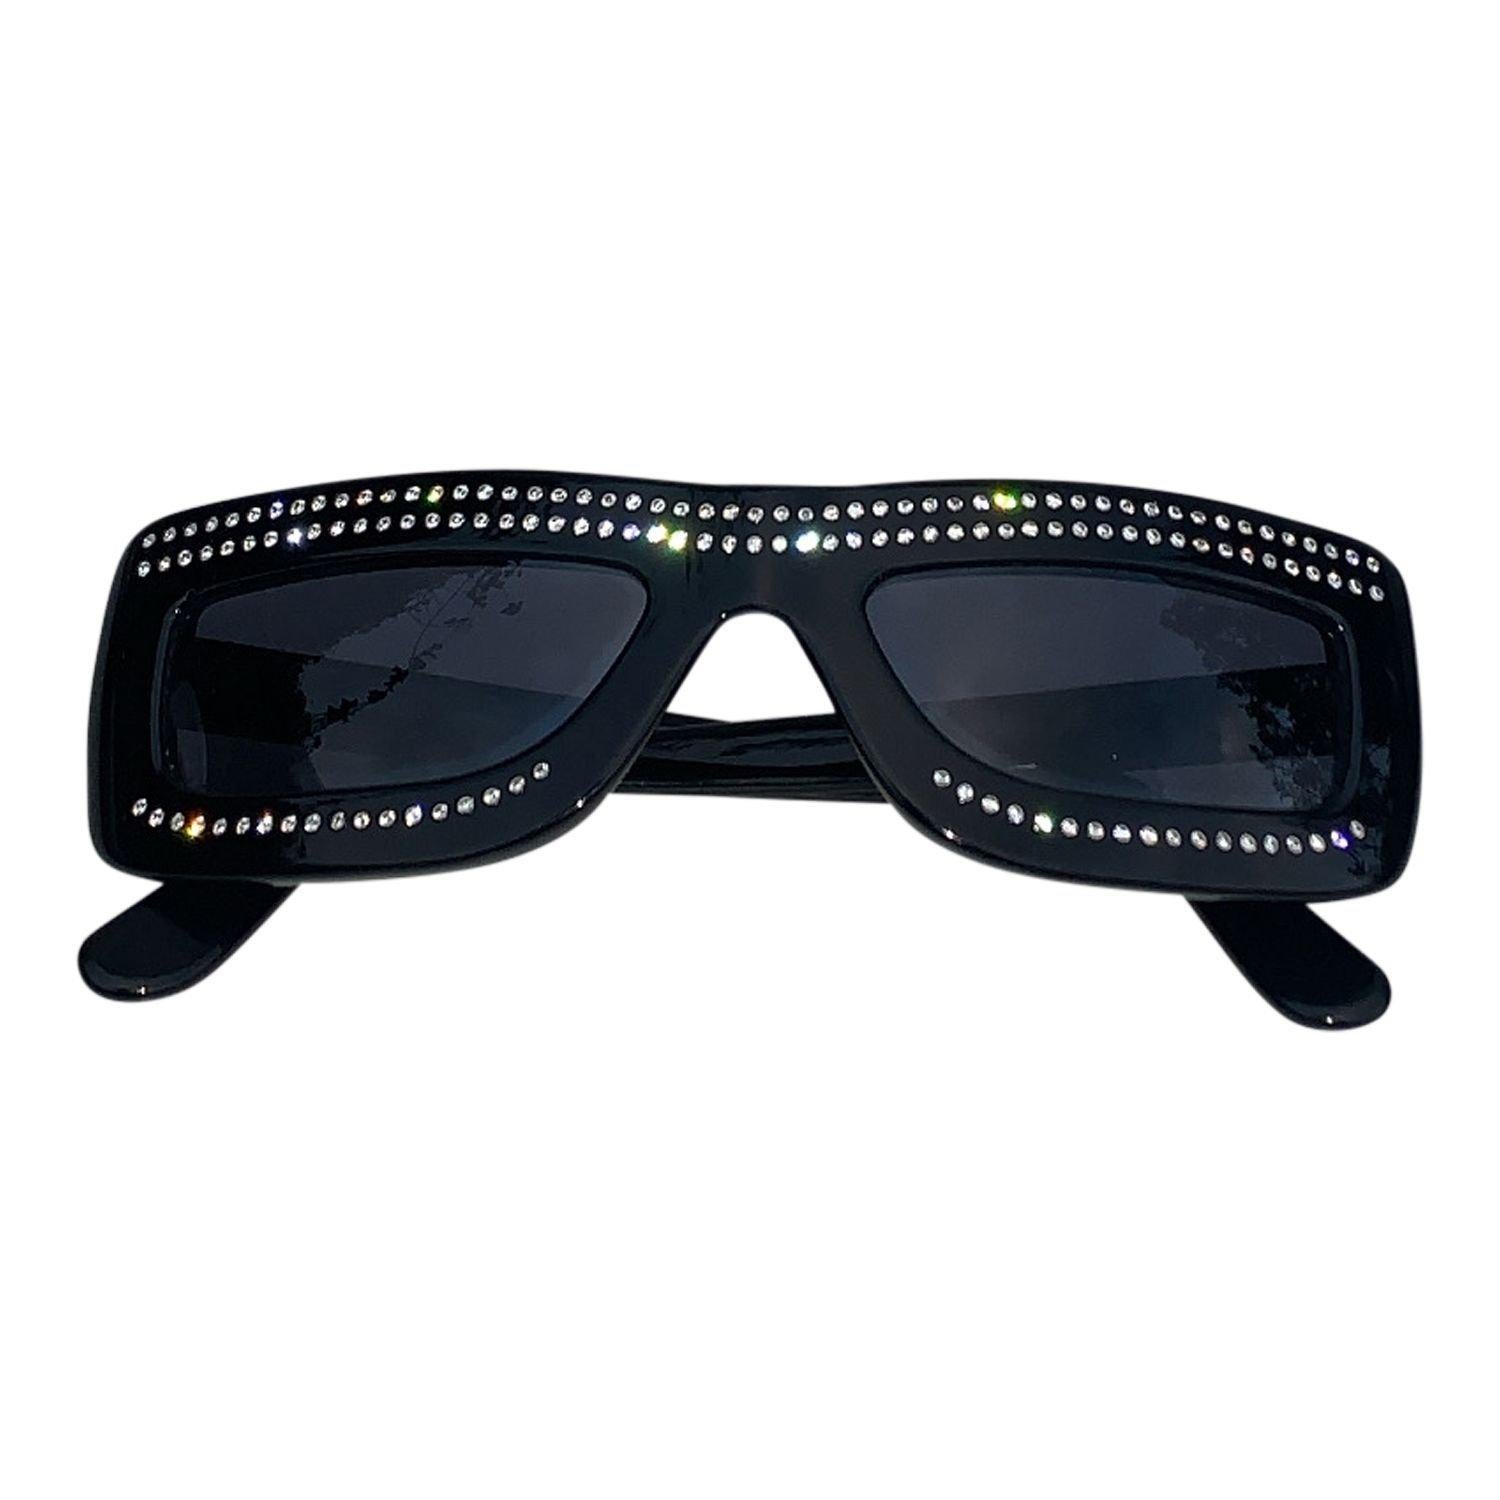 Ces lunettes de soleil Moschino sont une véritable déclaration de mode.
Les montures noires sont fabriquées en acétate de haute qualité et présentent une forme rectangulaire classique. Les bras sont ornés d'une découpe qui ajoute une touche d'audace